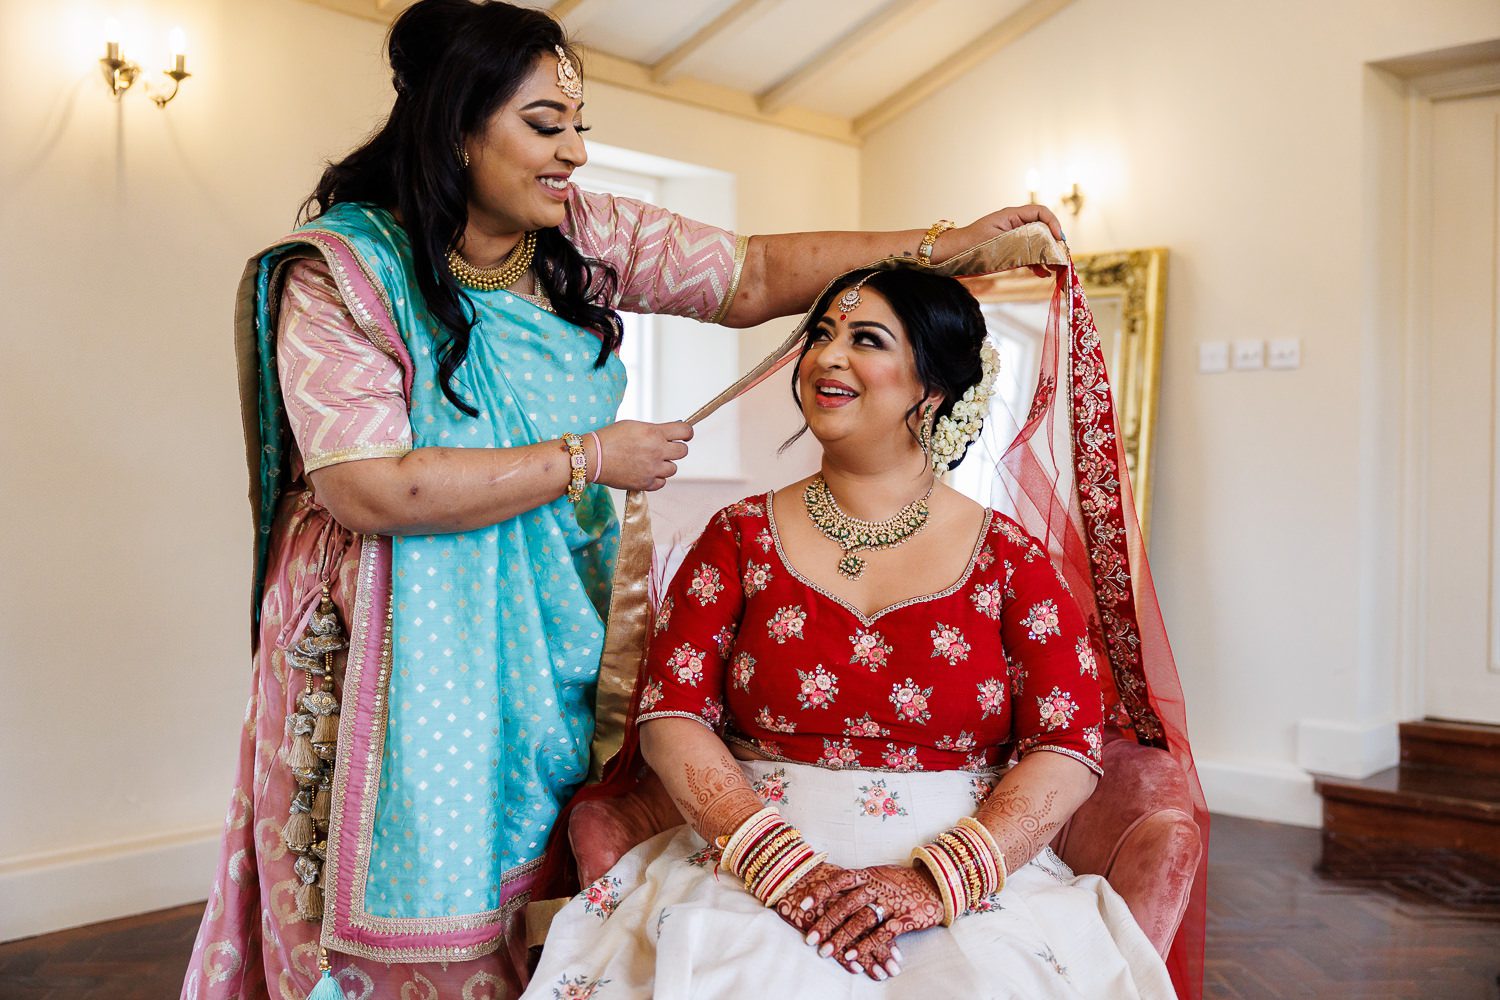 Hindu wedding bride getting ready